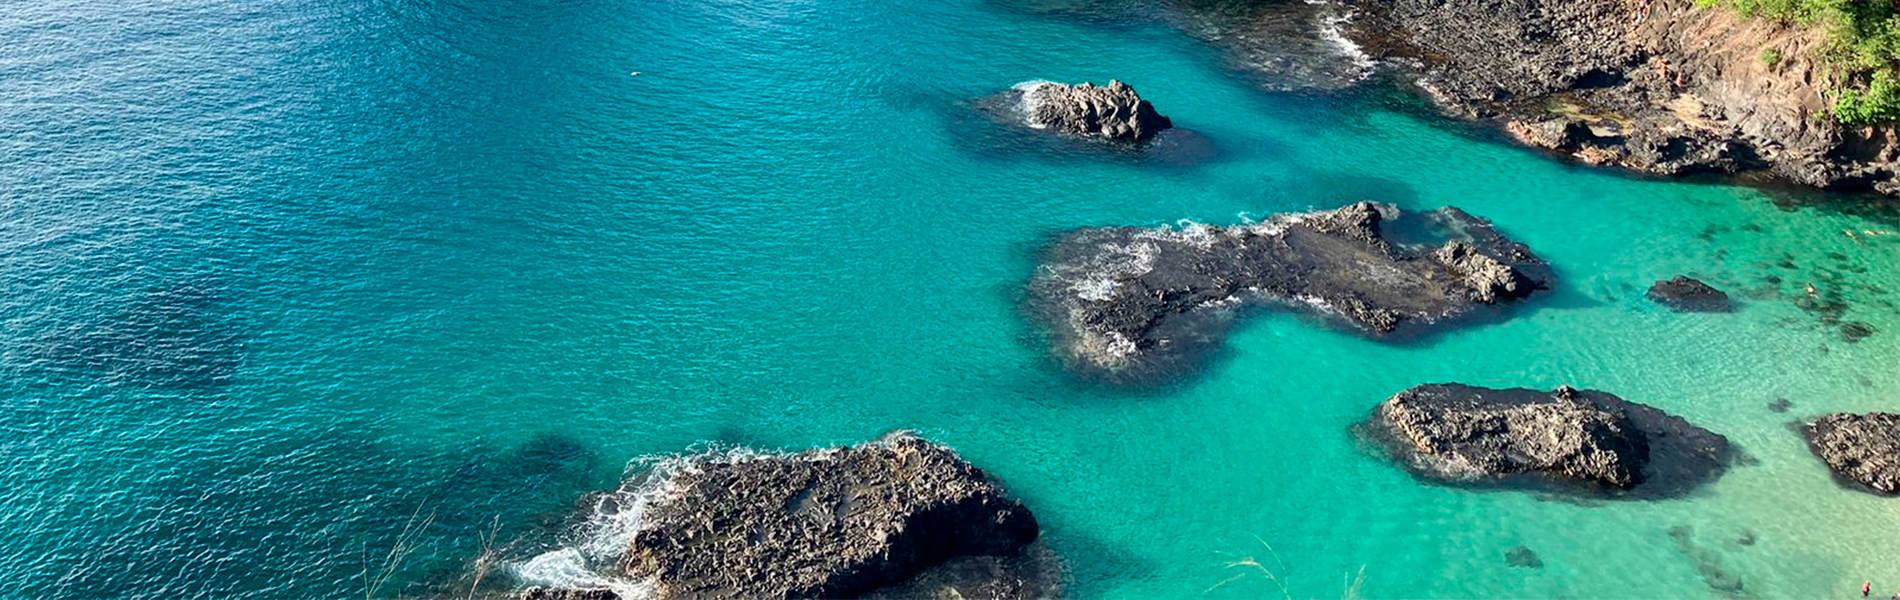 Foto de mar azul e duas grandes pedras perto da costa de uma praia.